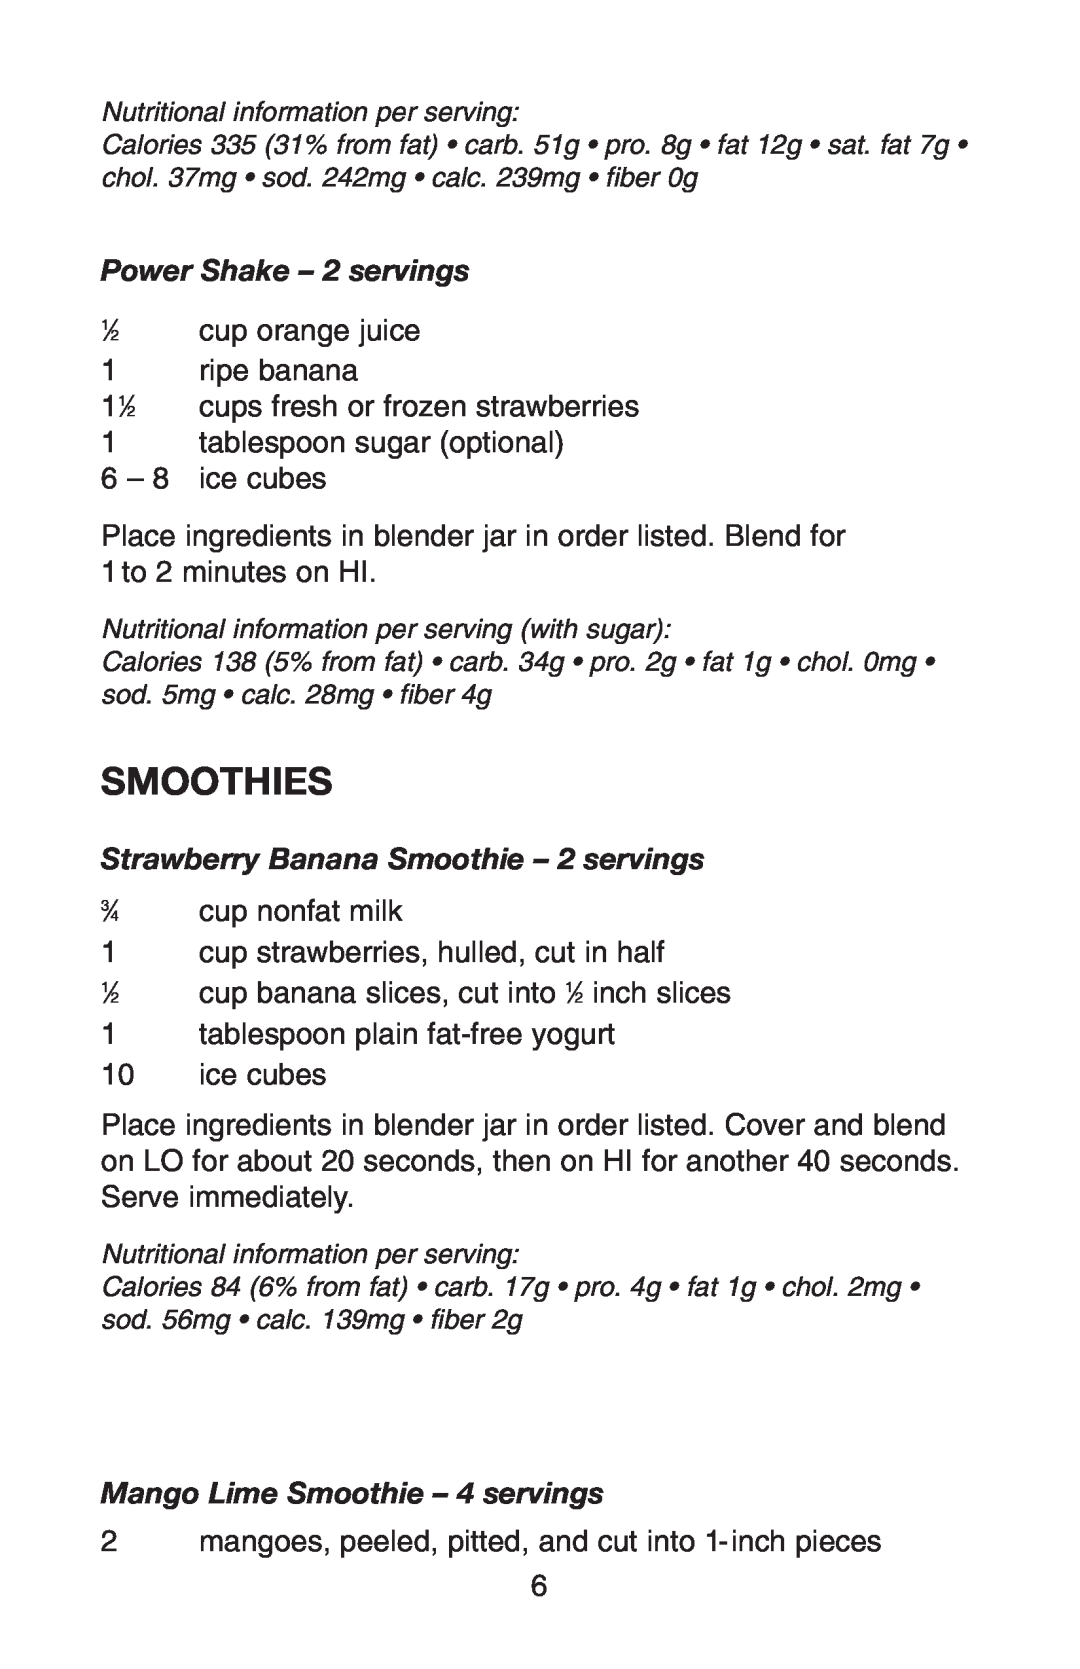 Conair RB70 Smoothies, Power Shake - 2 servings, Strawberry Banana Smoothie - 2 servings, Mango Lime Smoothie - 4 servings 